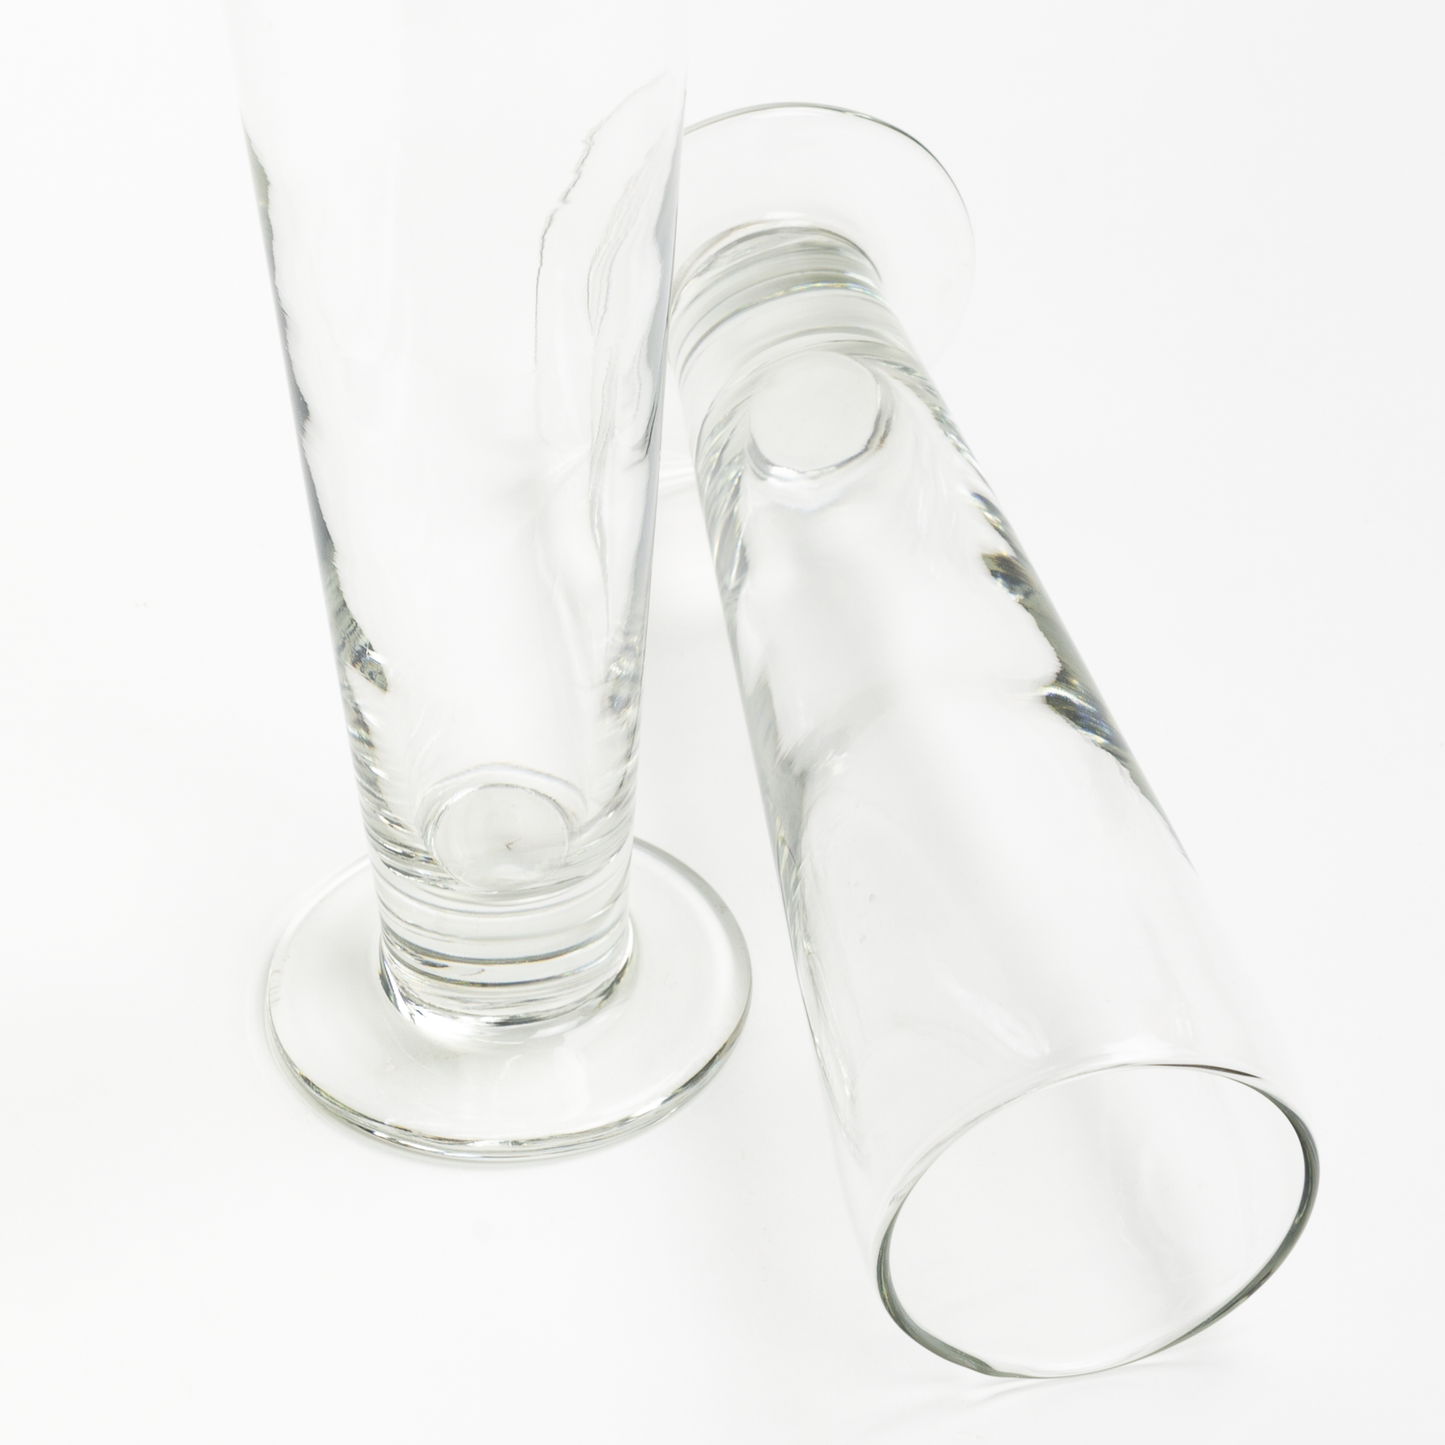 Pilsner Glasses - Set of 2